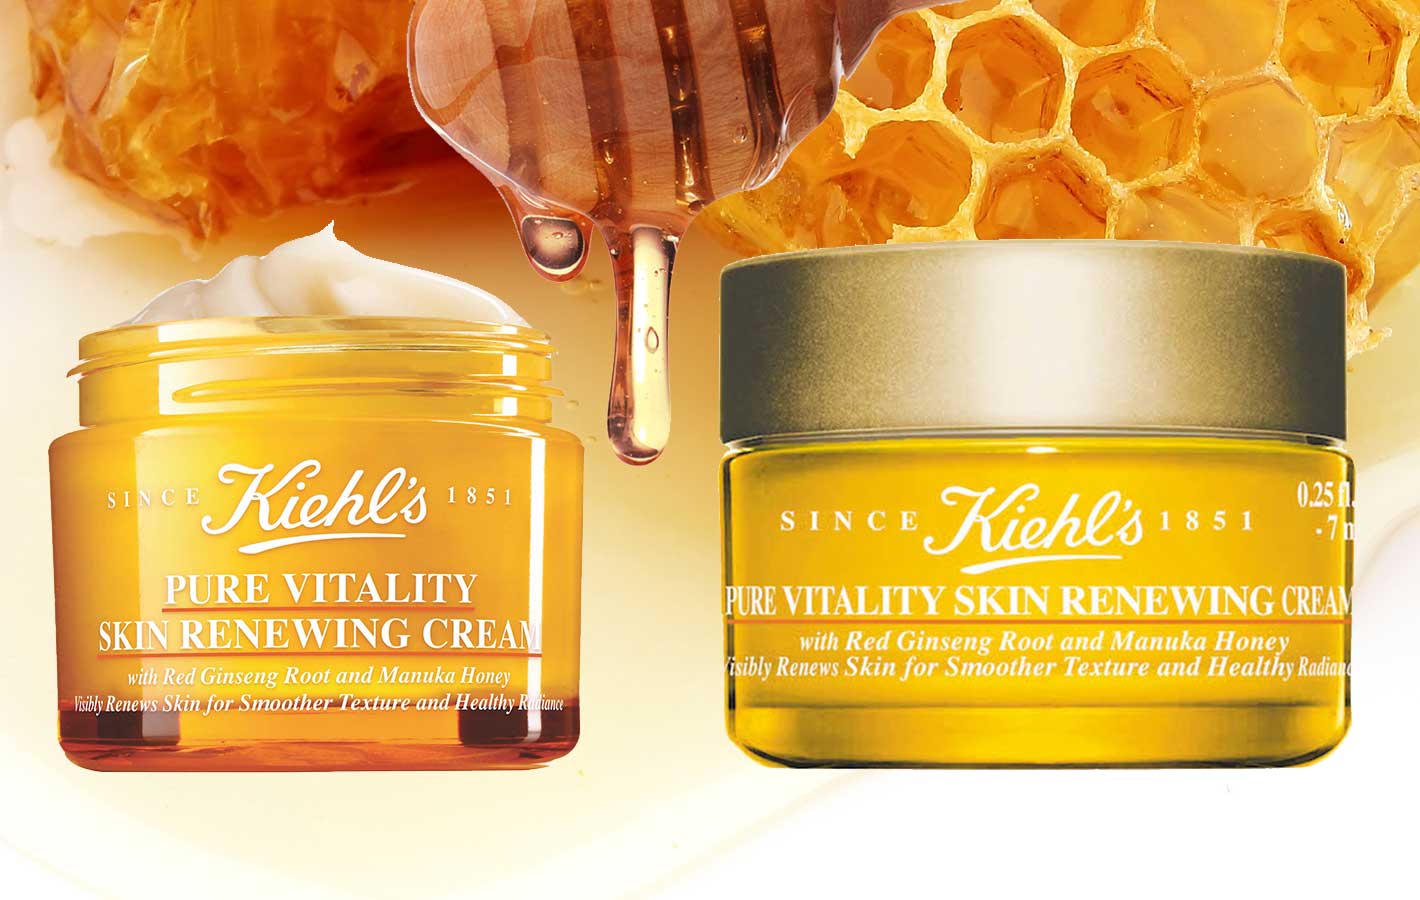 Pure Vitality Skin Renewing Cream – jak działa nowy krem Kiehl’s?